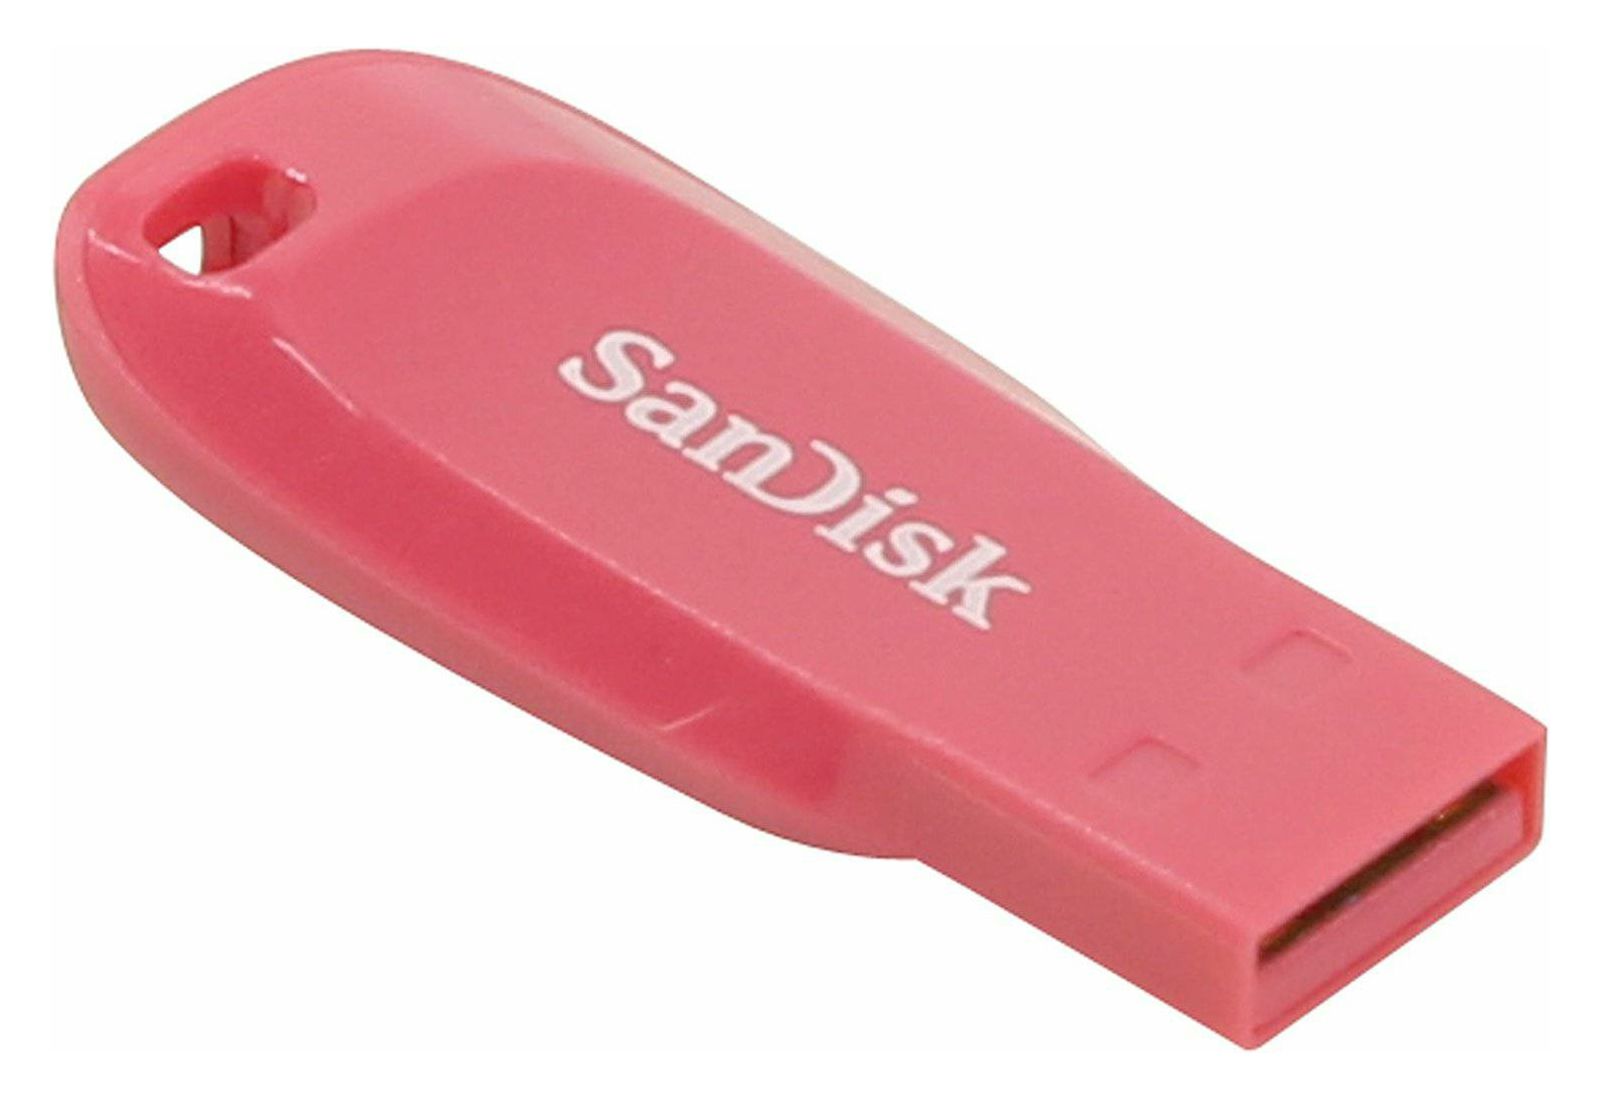 SanDisk Cruzer Blade USB Flash Drive 3-pack 16GB USB memorija (SDCZ50C-016G-B46T)